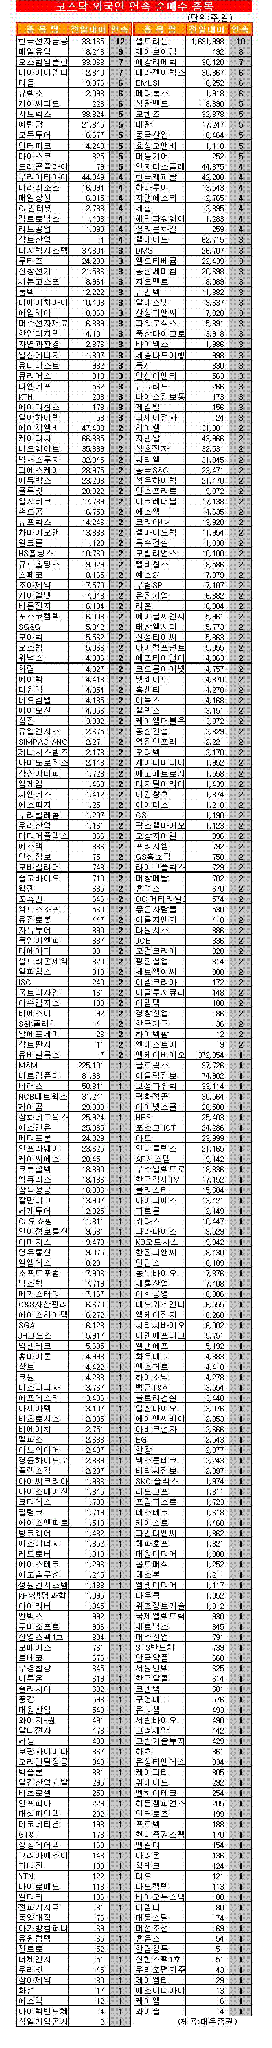 [표]코스닥 외국인 연속 순매수 종목-5일